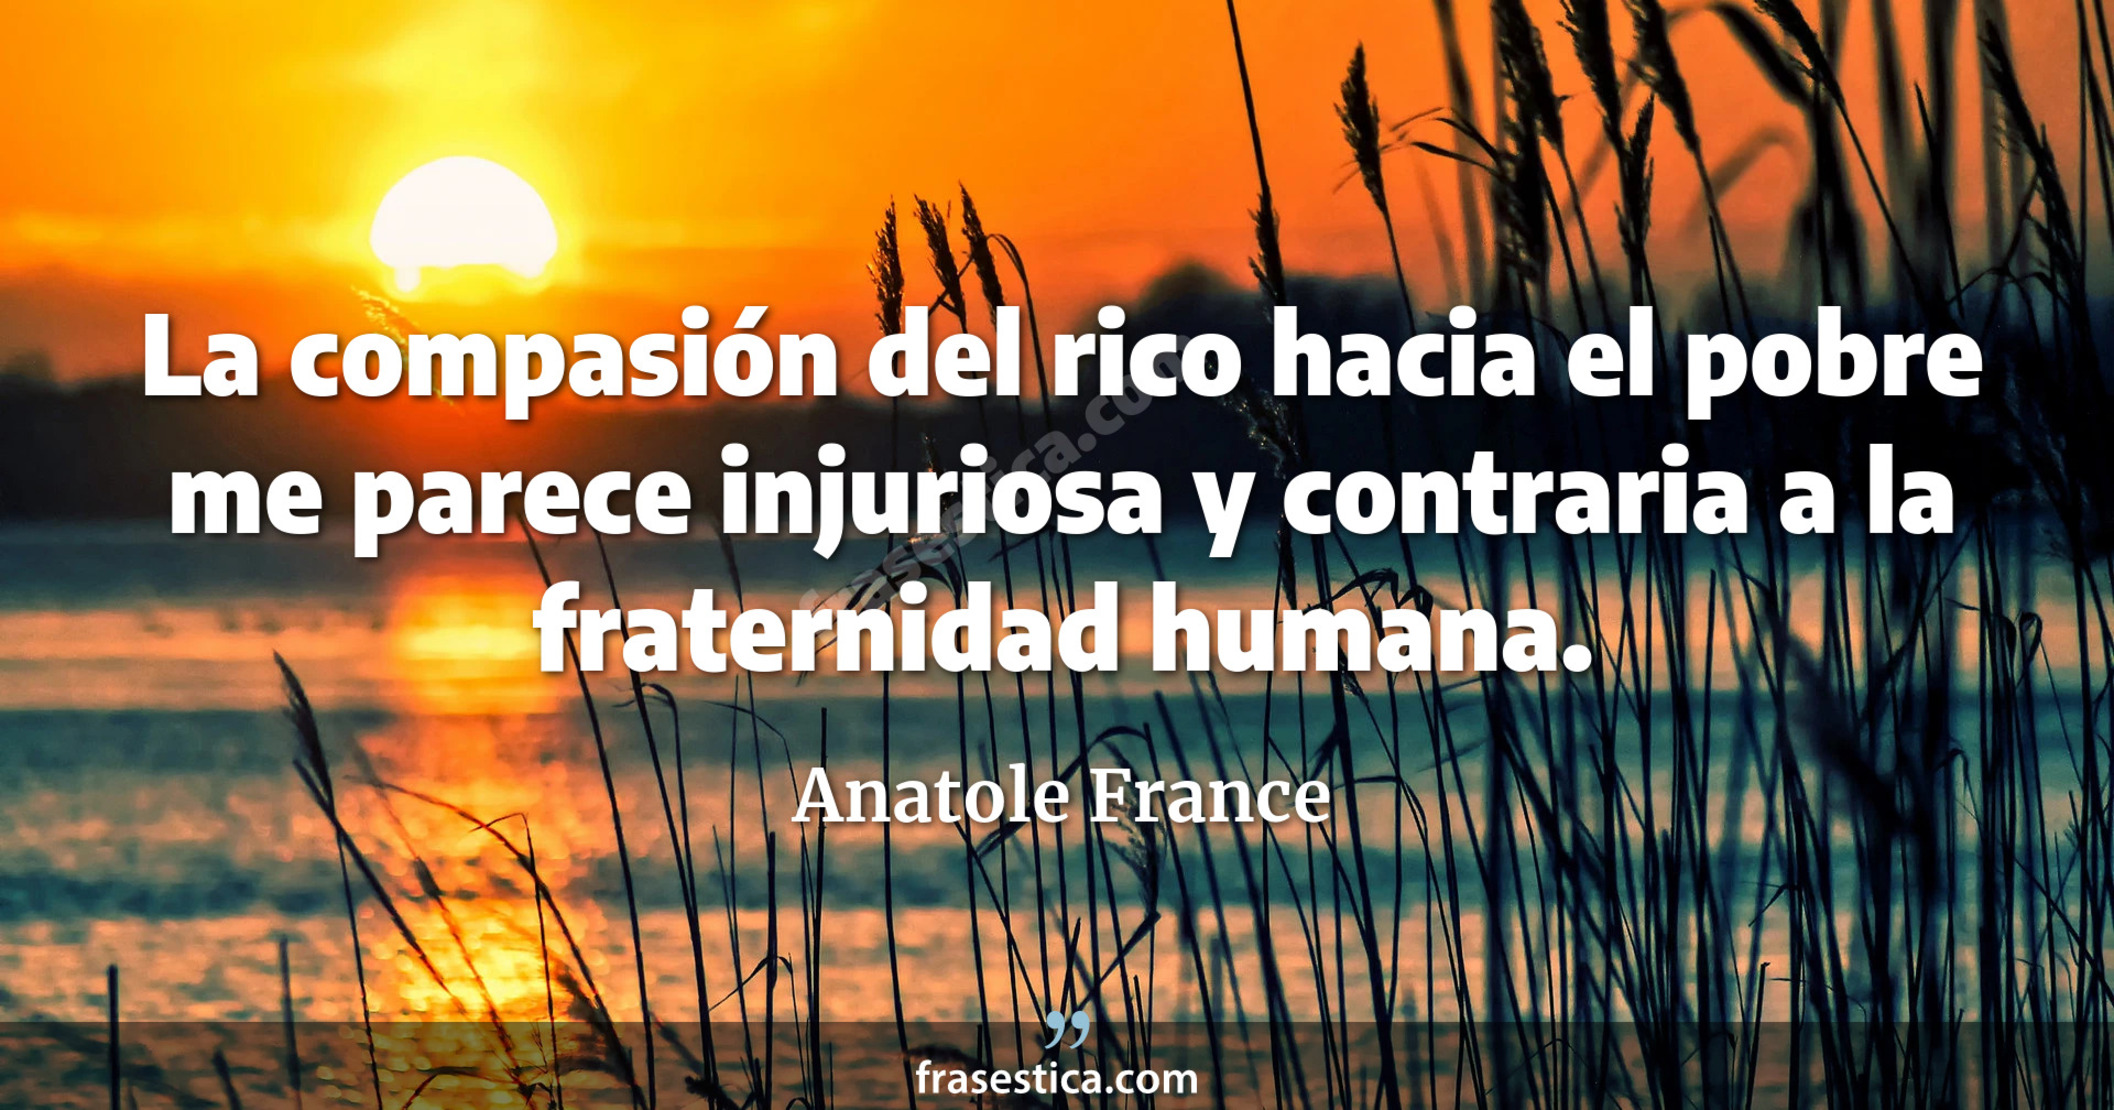 La compasión del rico hacia el pobre me parece injuriosa y contraria a la fraternidad humana. - Anatole France